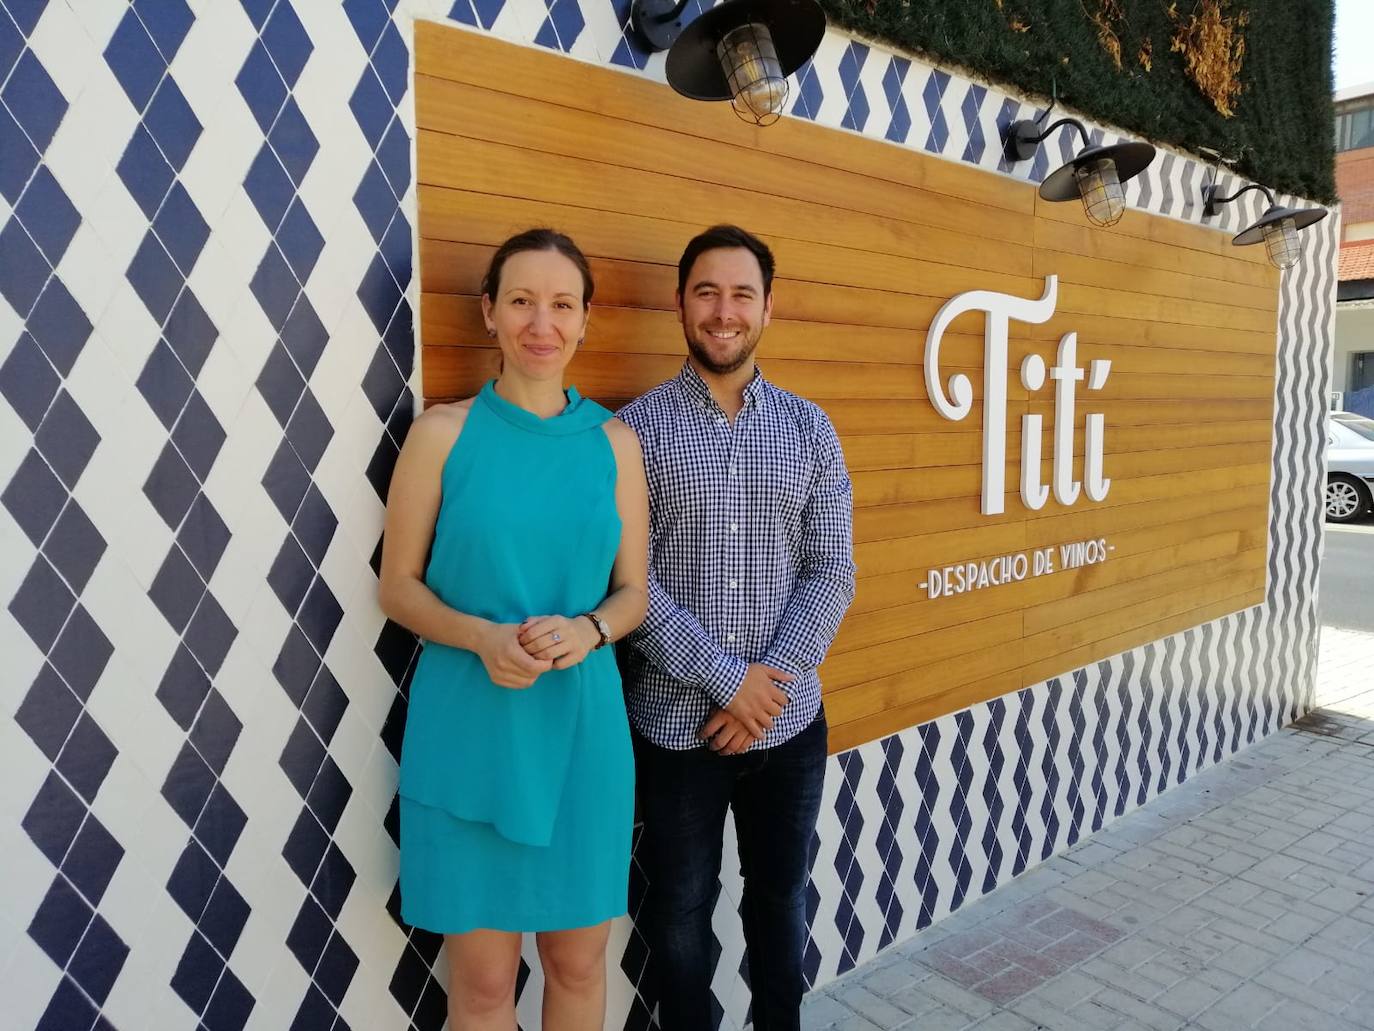 Pilar Martínez y Pablo Guirado tras la firma de un convenio de prácticas entre Tití Despacho de Vinos y EADE.